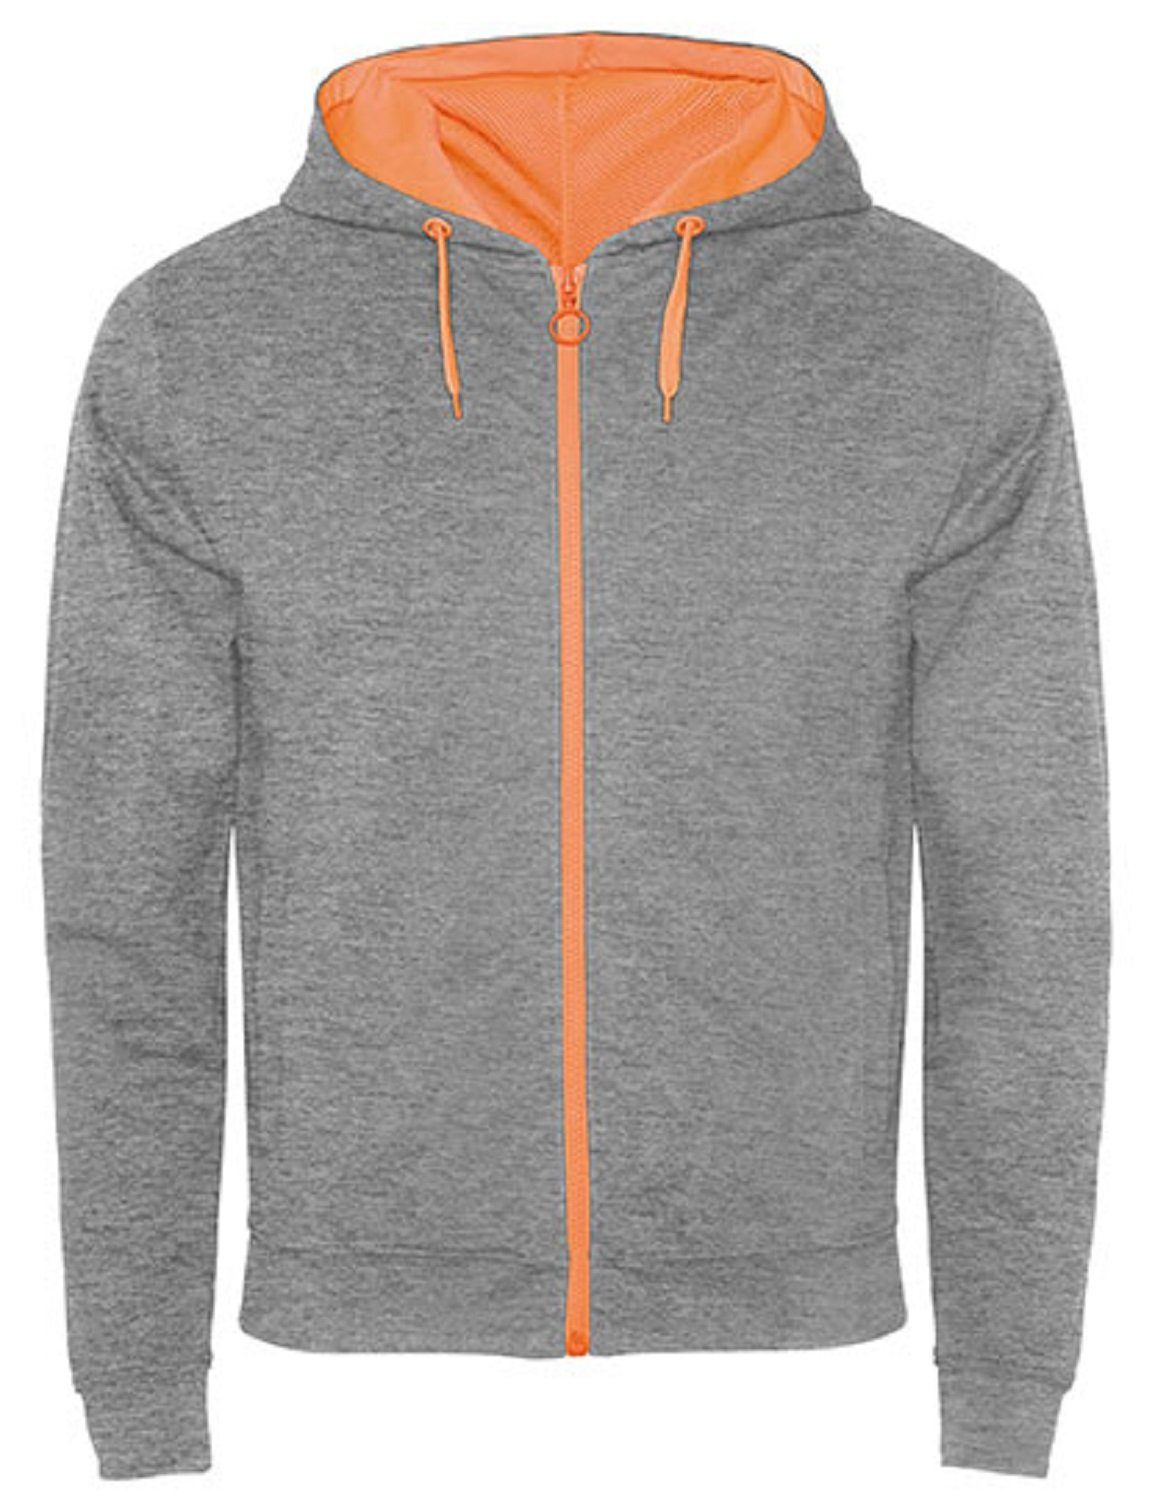 mit auch / Roly für Herren Reißverschluss Kapuzensweatjacke geeignet Grau/ Sweat-Jacke Kapuze Kapuzensweater mit Frauen Orange